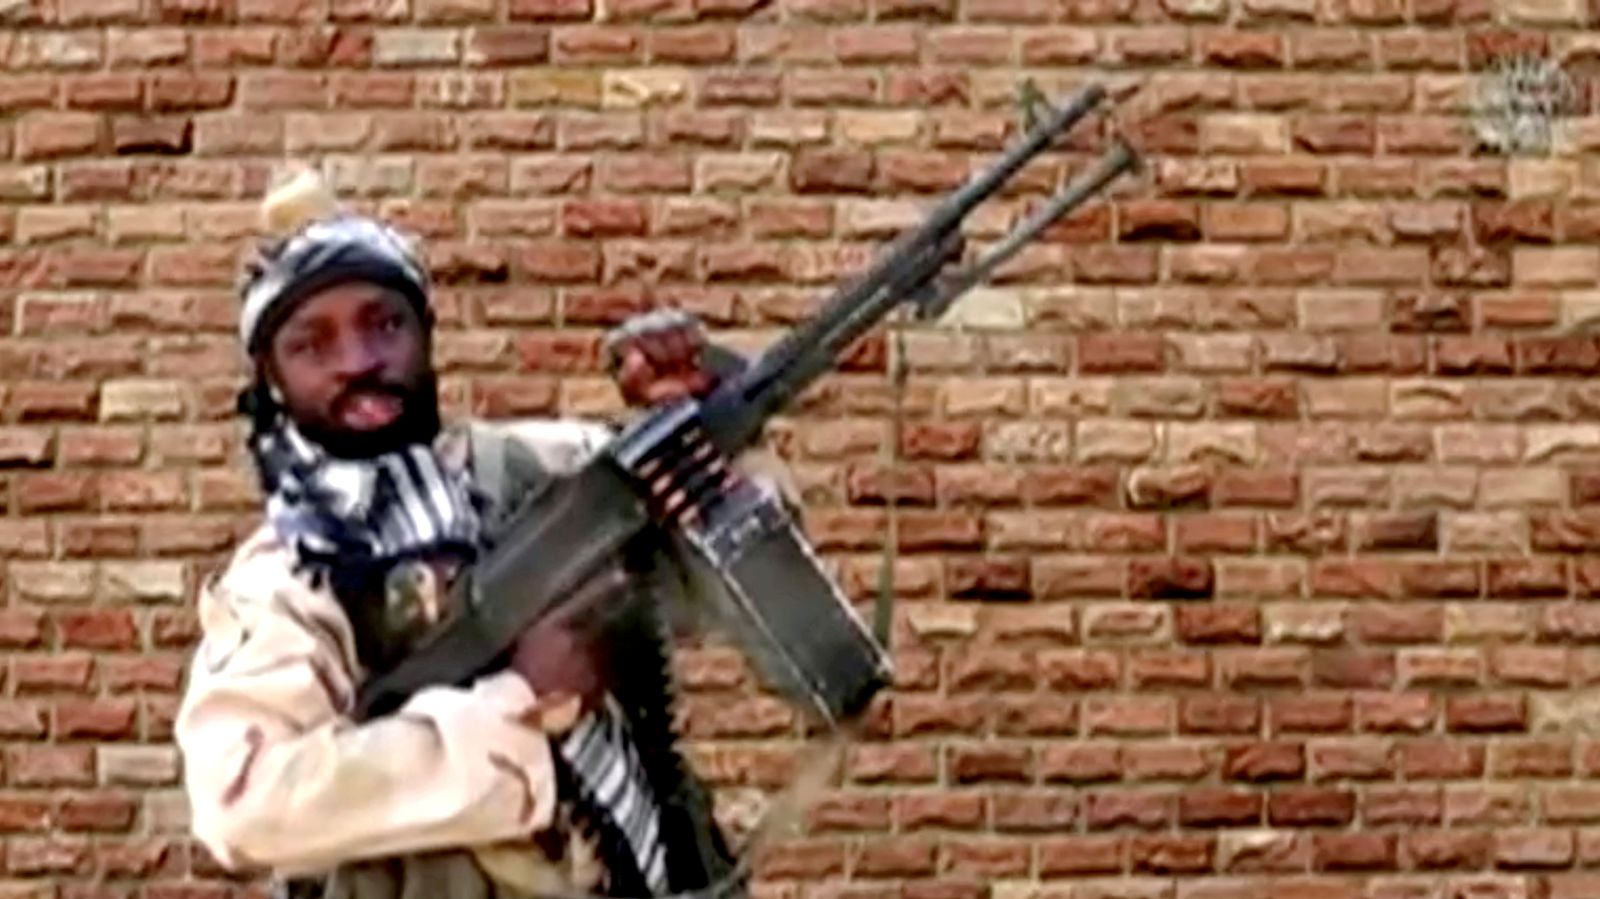 زعيم بوكو حرام السابق أبو بكر شيخو يحمل سلاحاً في مكان مجهول في نيجيريا في هذه الصورة الثابتة المأخوذة من مقطع فيديو غير مؤرخ تم الحصول عليه في 15 يناير 2018 - REUTERS